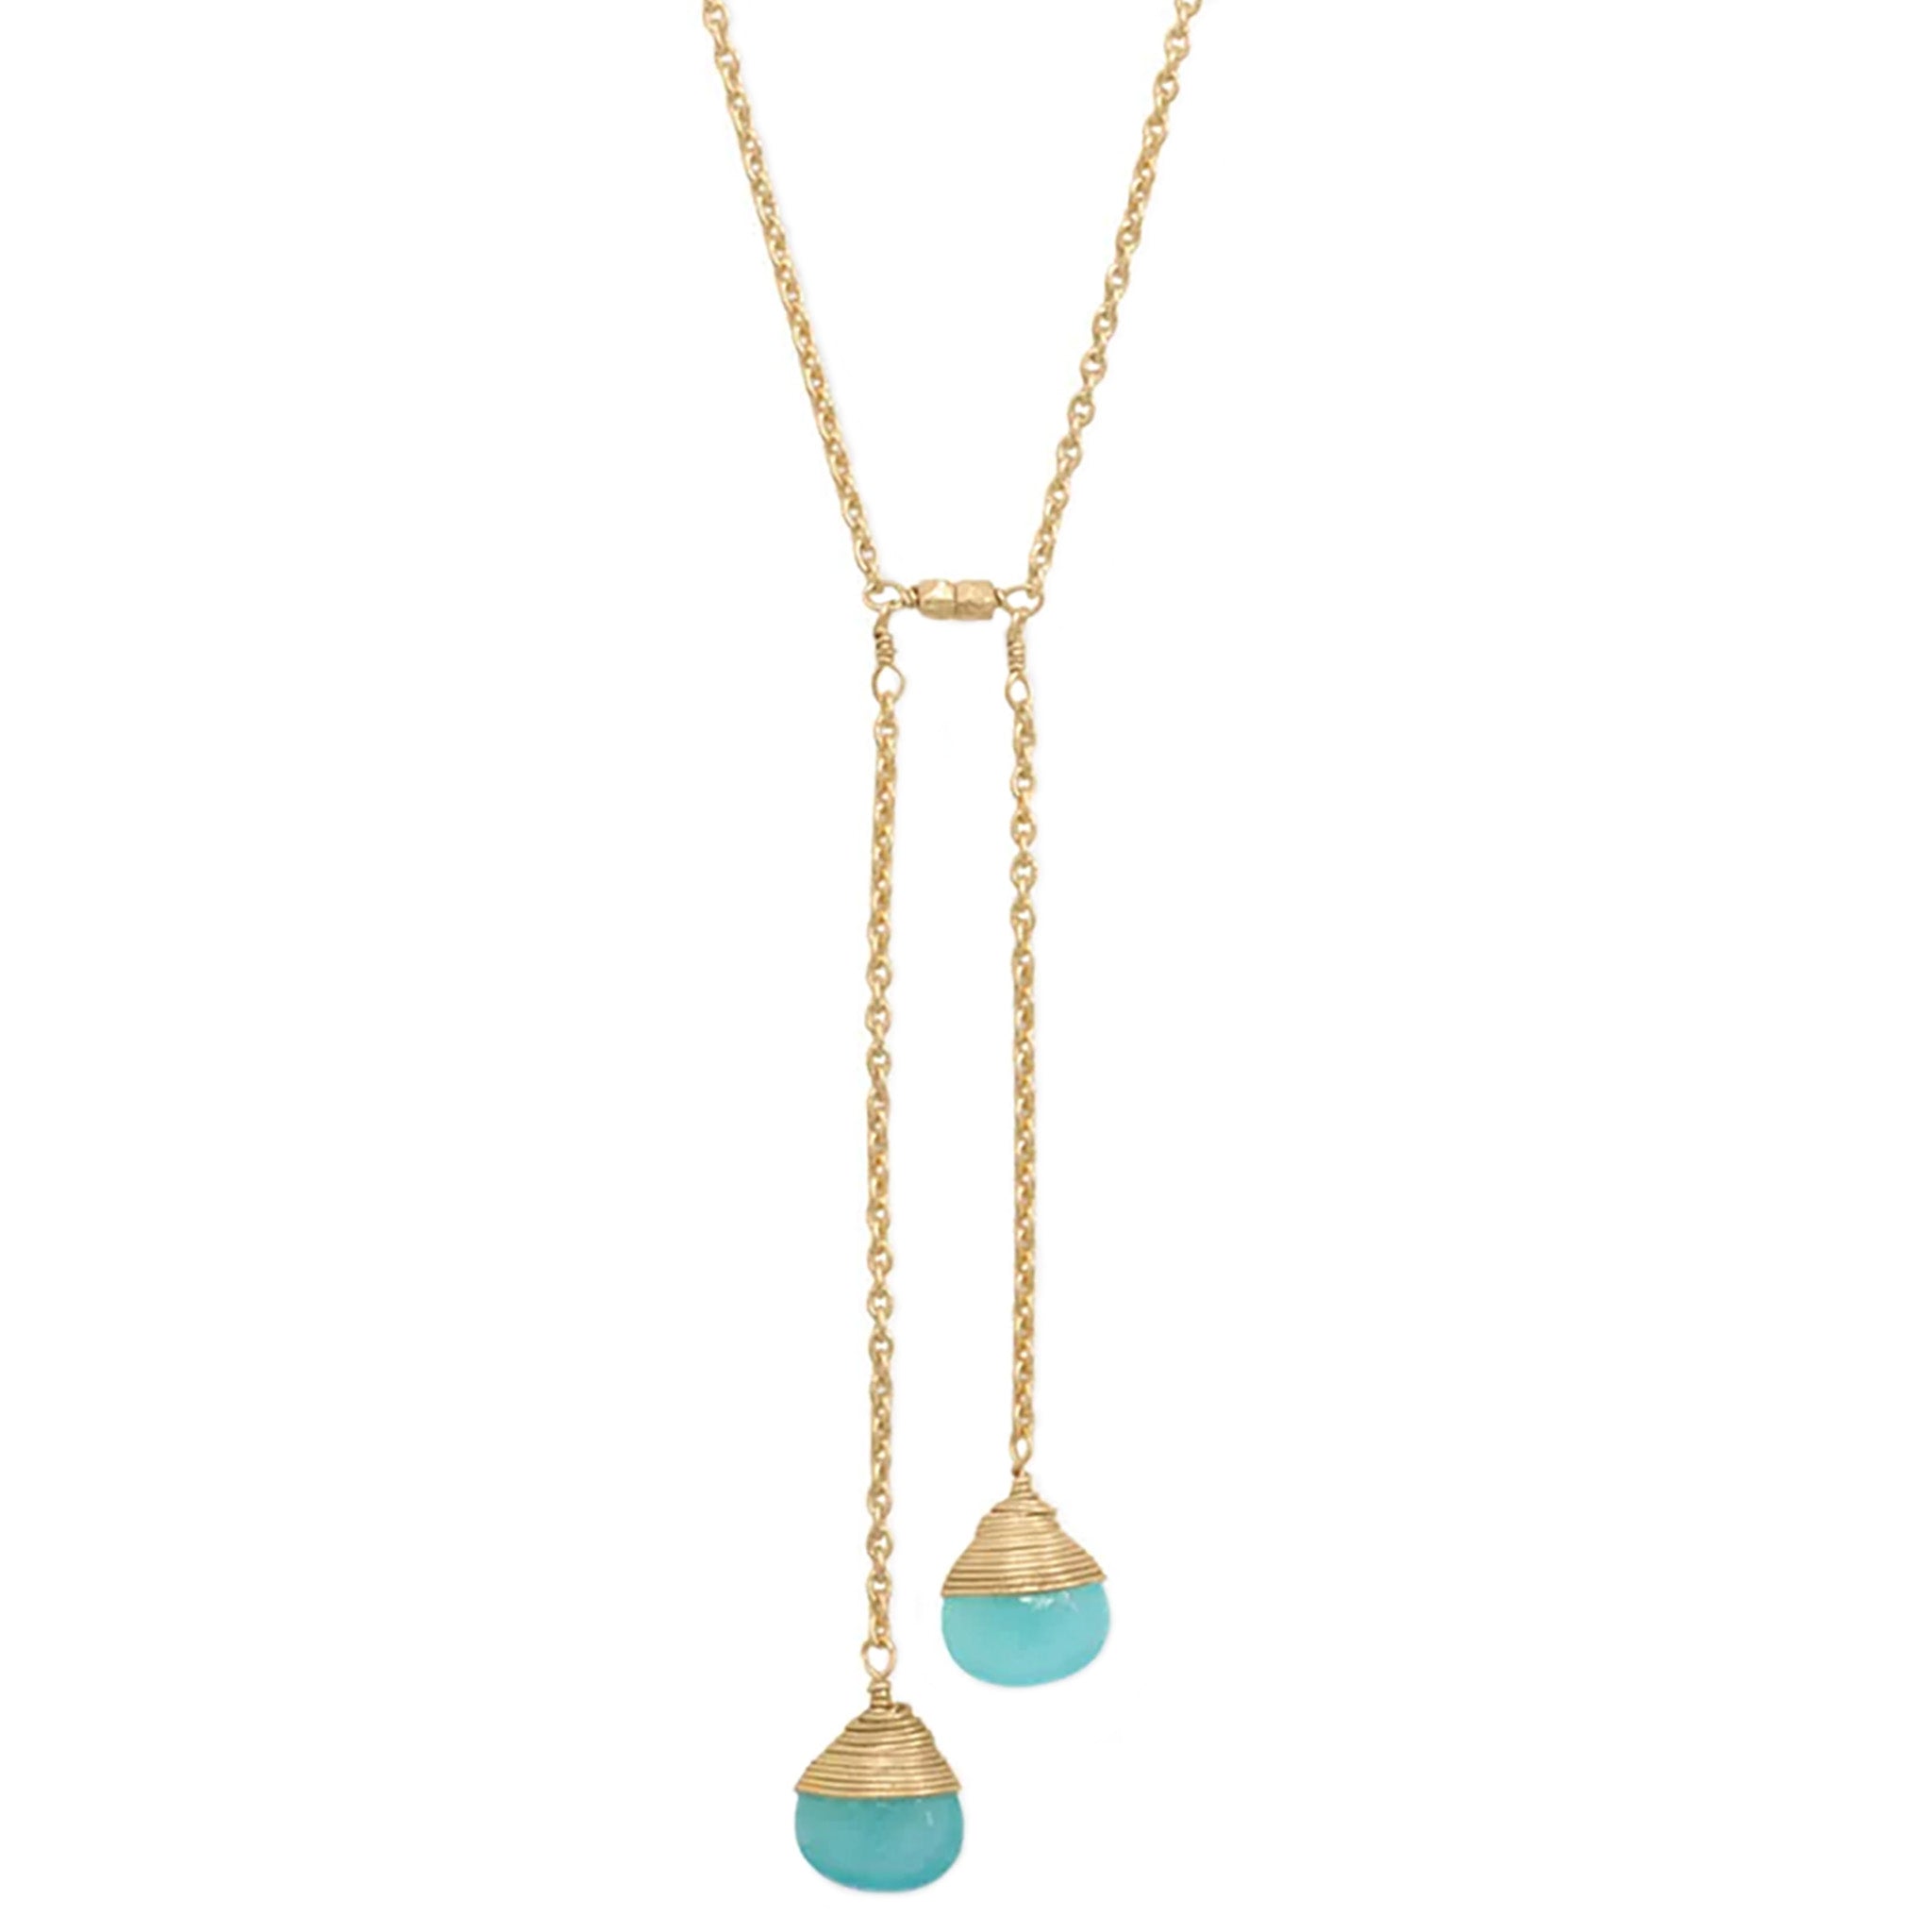 Aqua Chalcedony Lariat Style Necklace